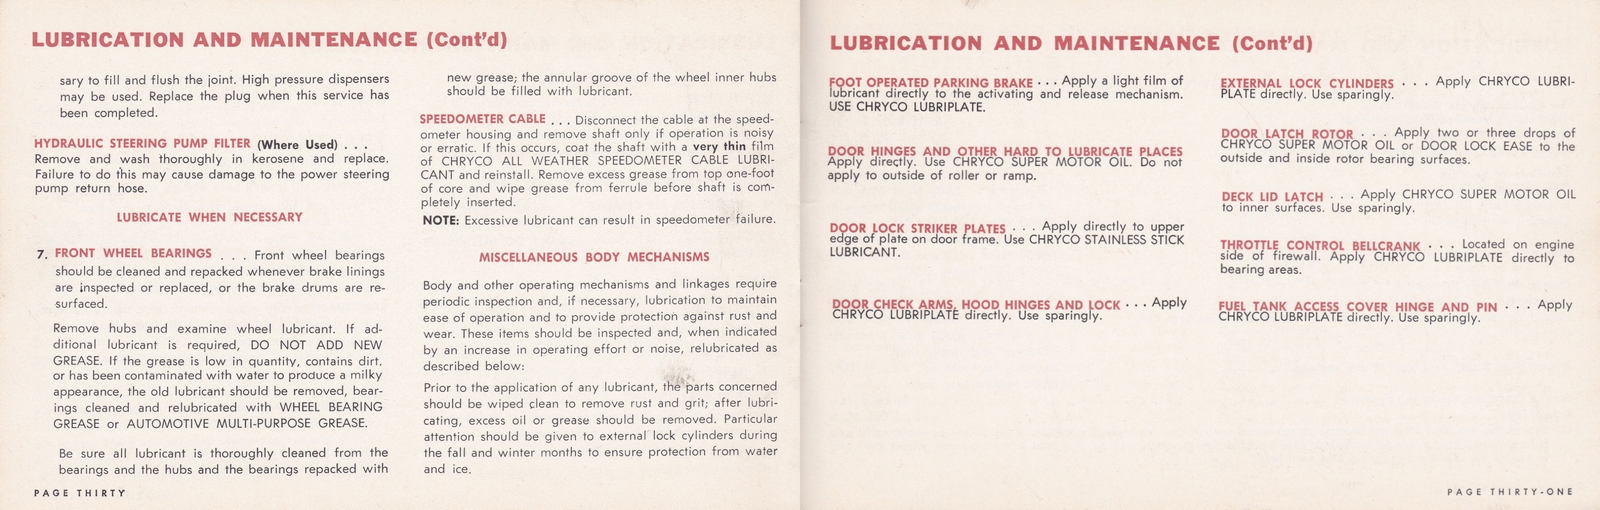 n_1964 Chrysler Owner's Manual (Cdn)-30-31.jpg